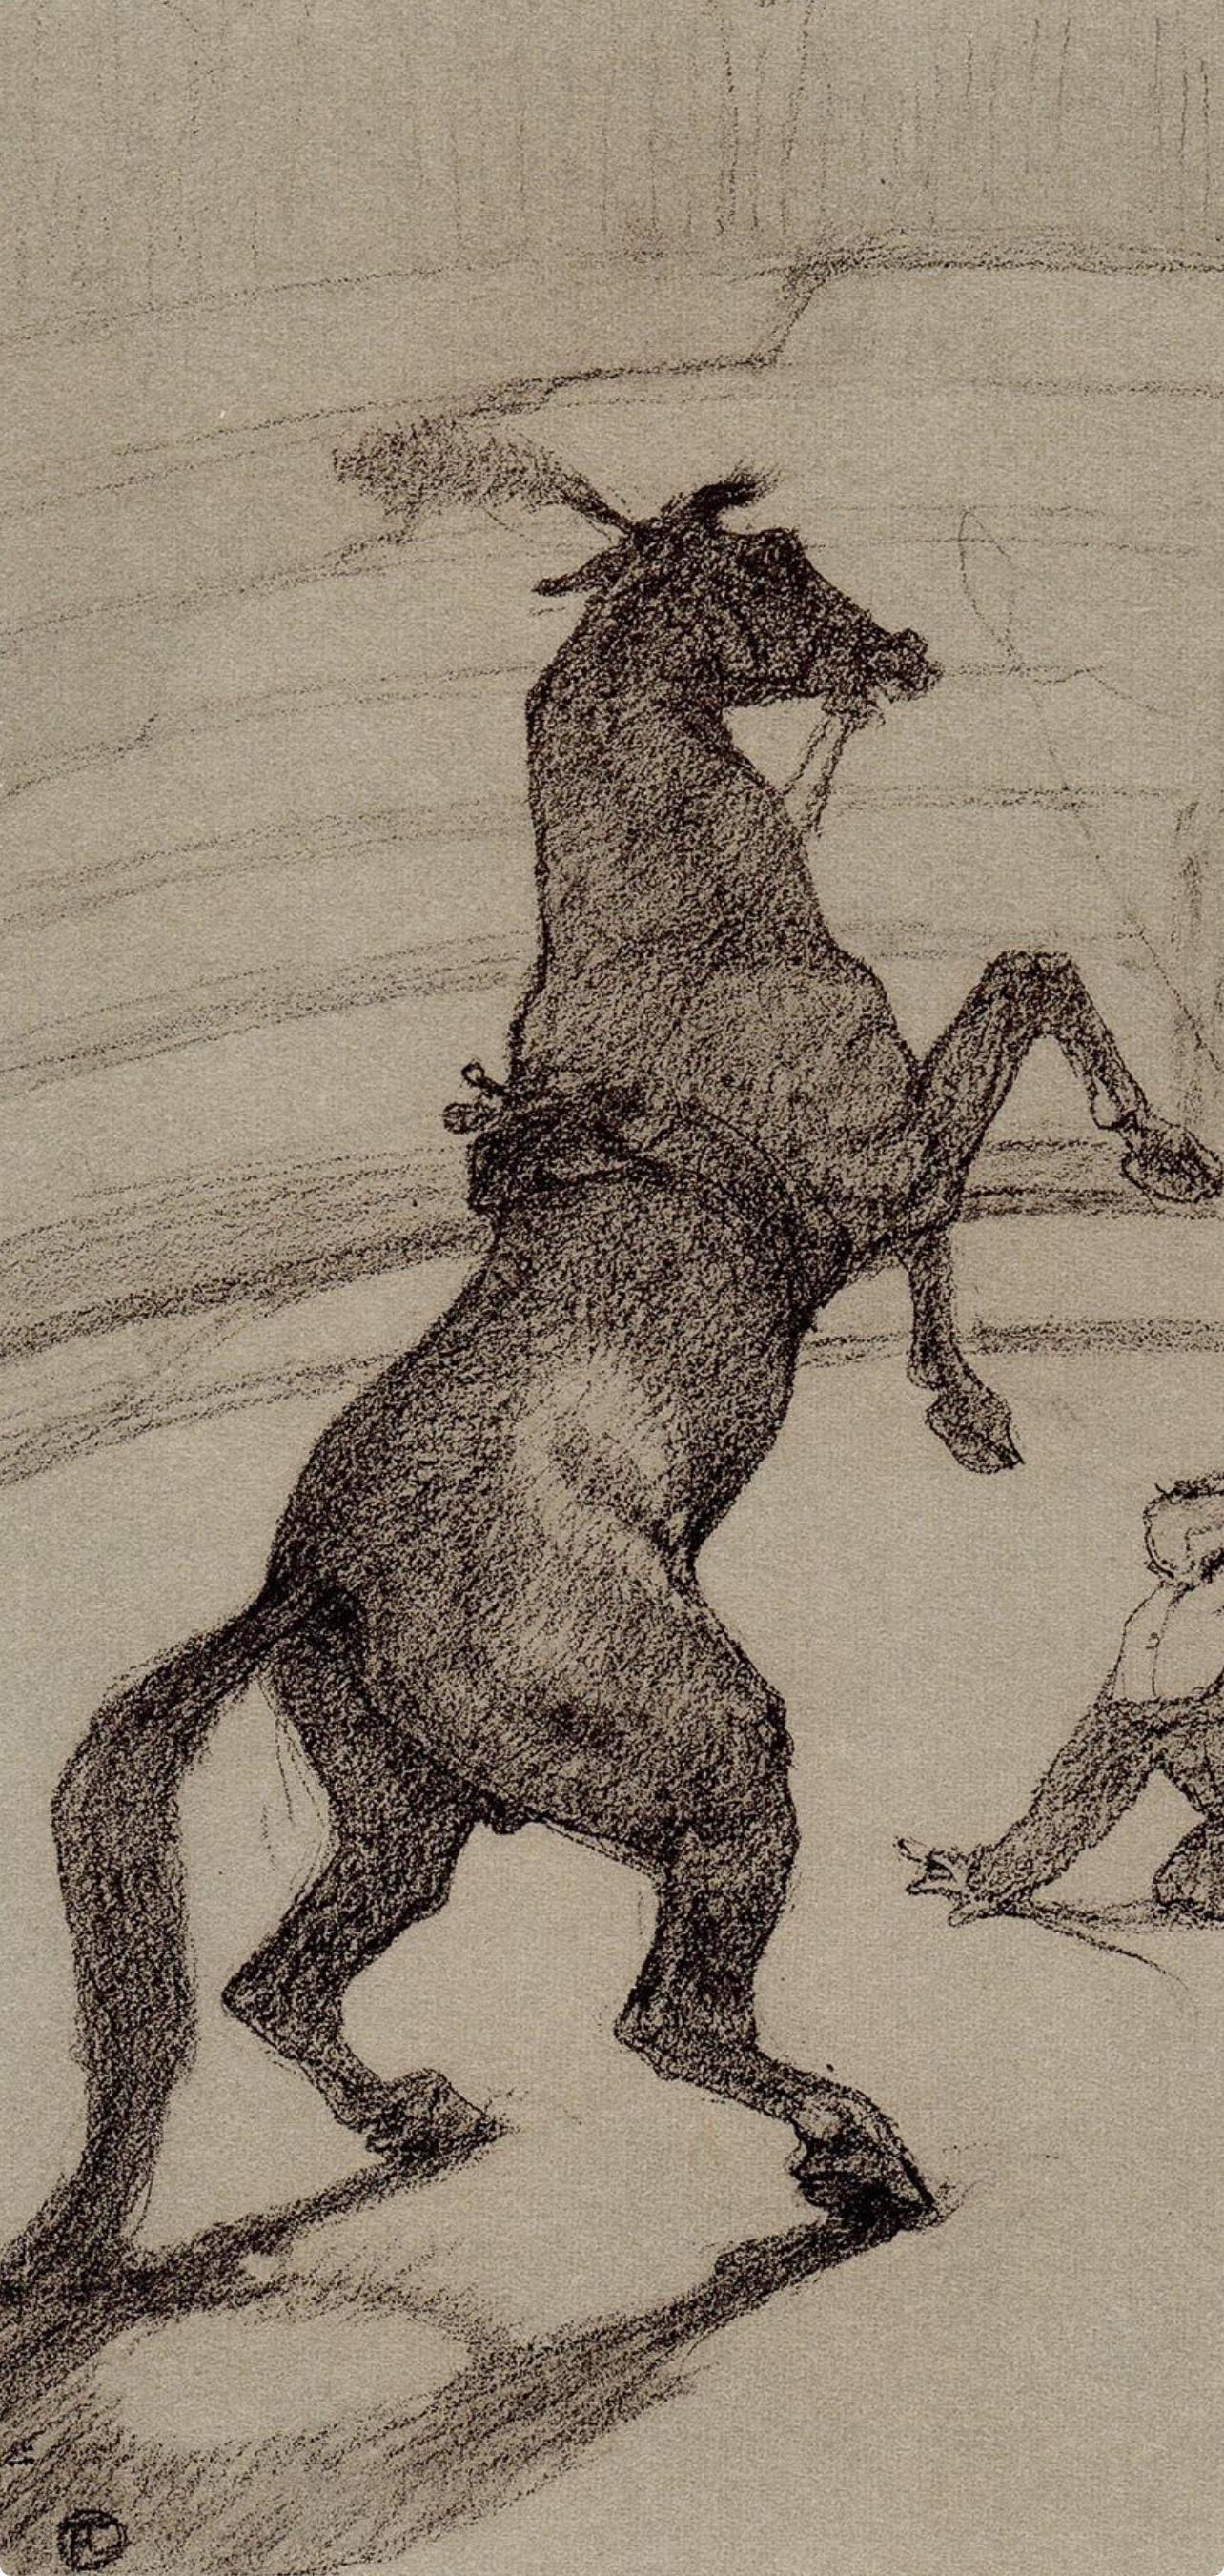 Toulouse-Lautrec, pointant de cheval, Le cirque de Toulouse-Lautrec (après) - Print de Henri de Toulouse-Lautrec